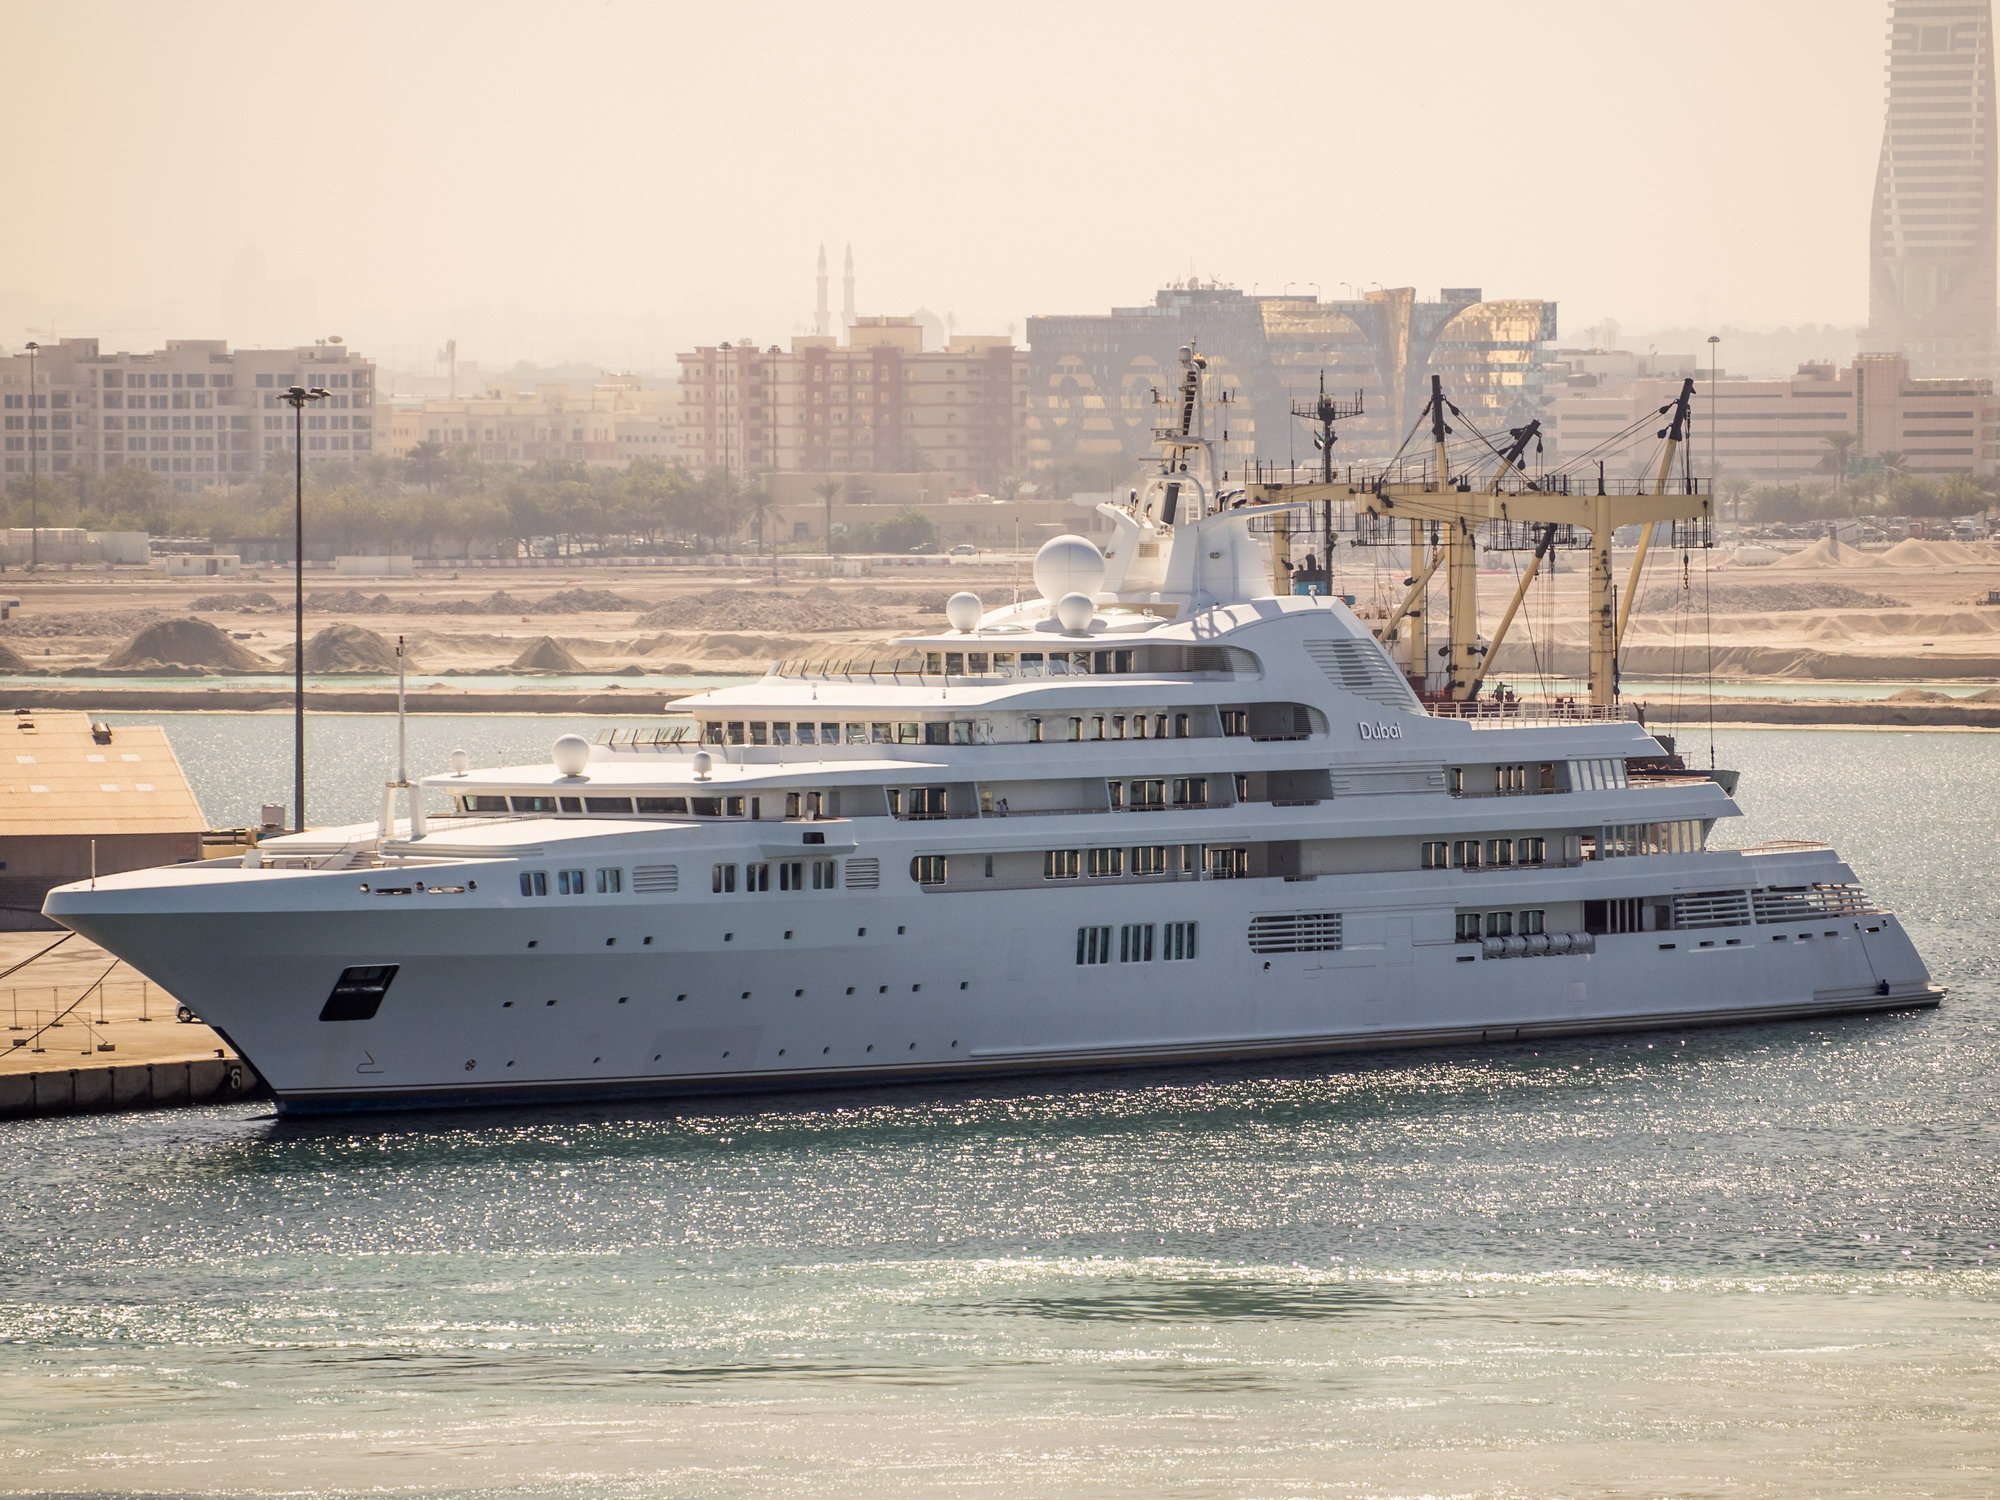 DUBAI Yate - Superyate de 500 millones de dólares del jeque Mohmmed - Platinum Yachts - 2006